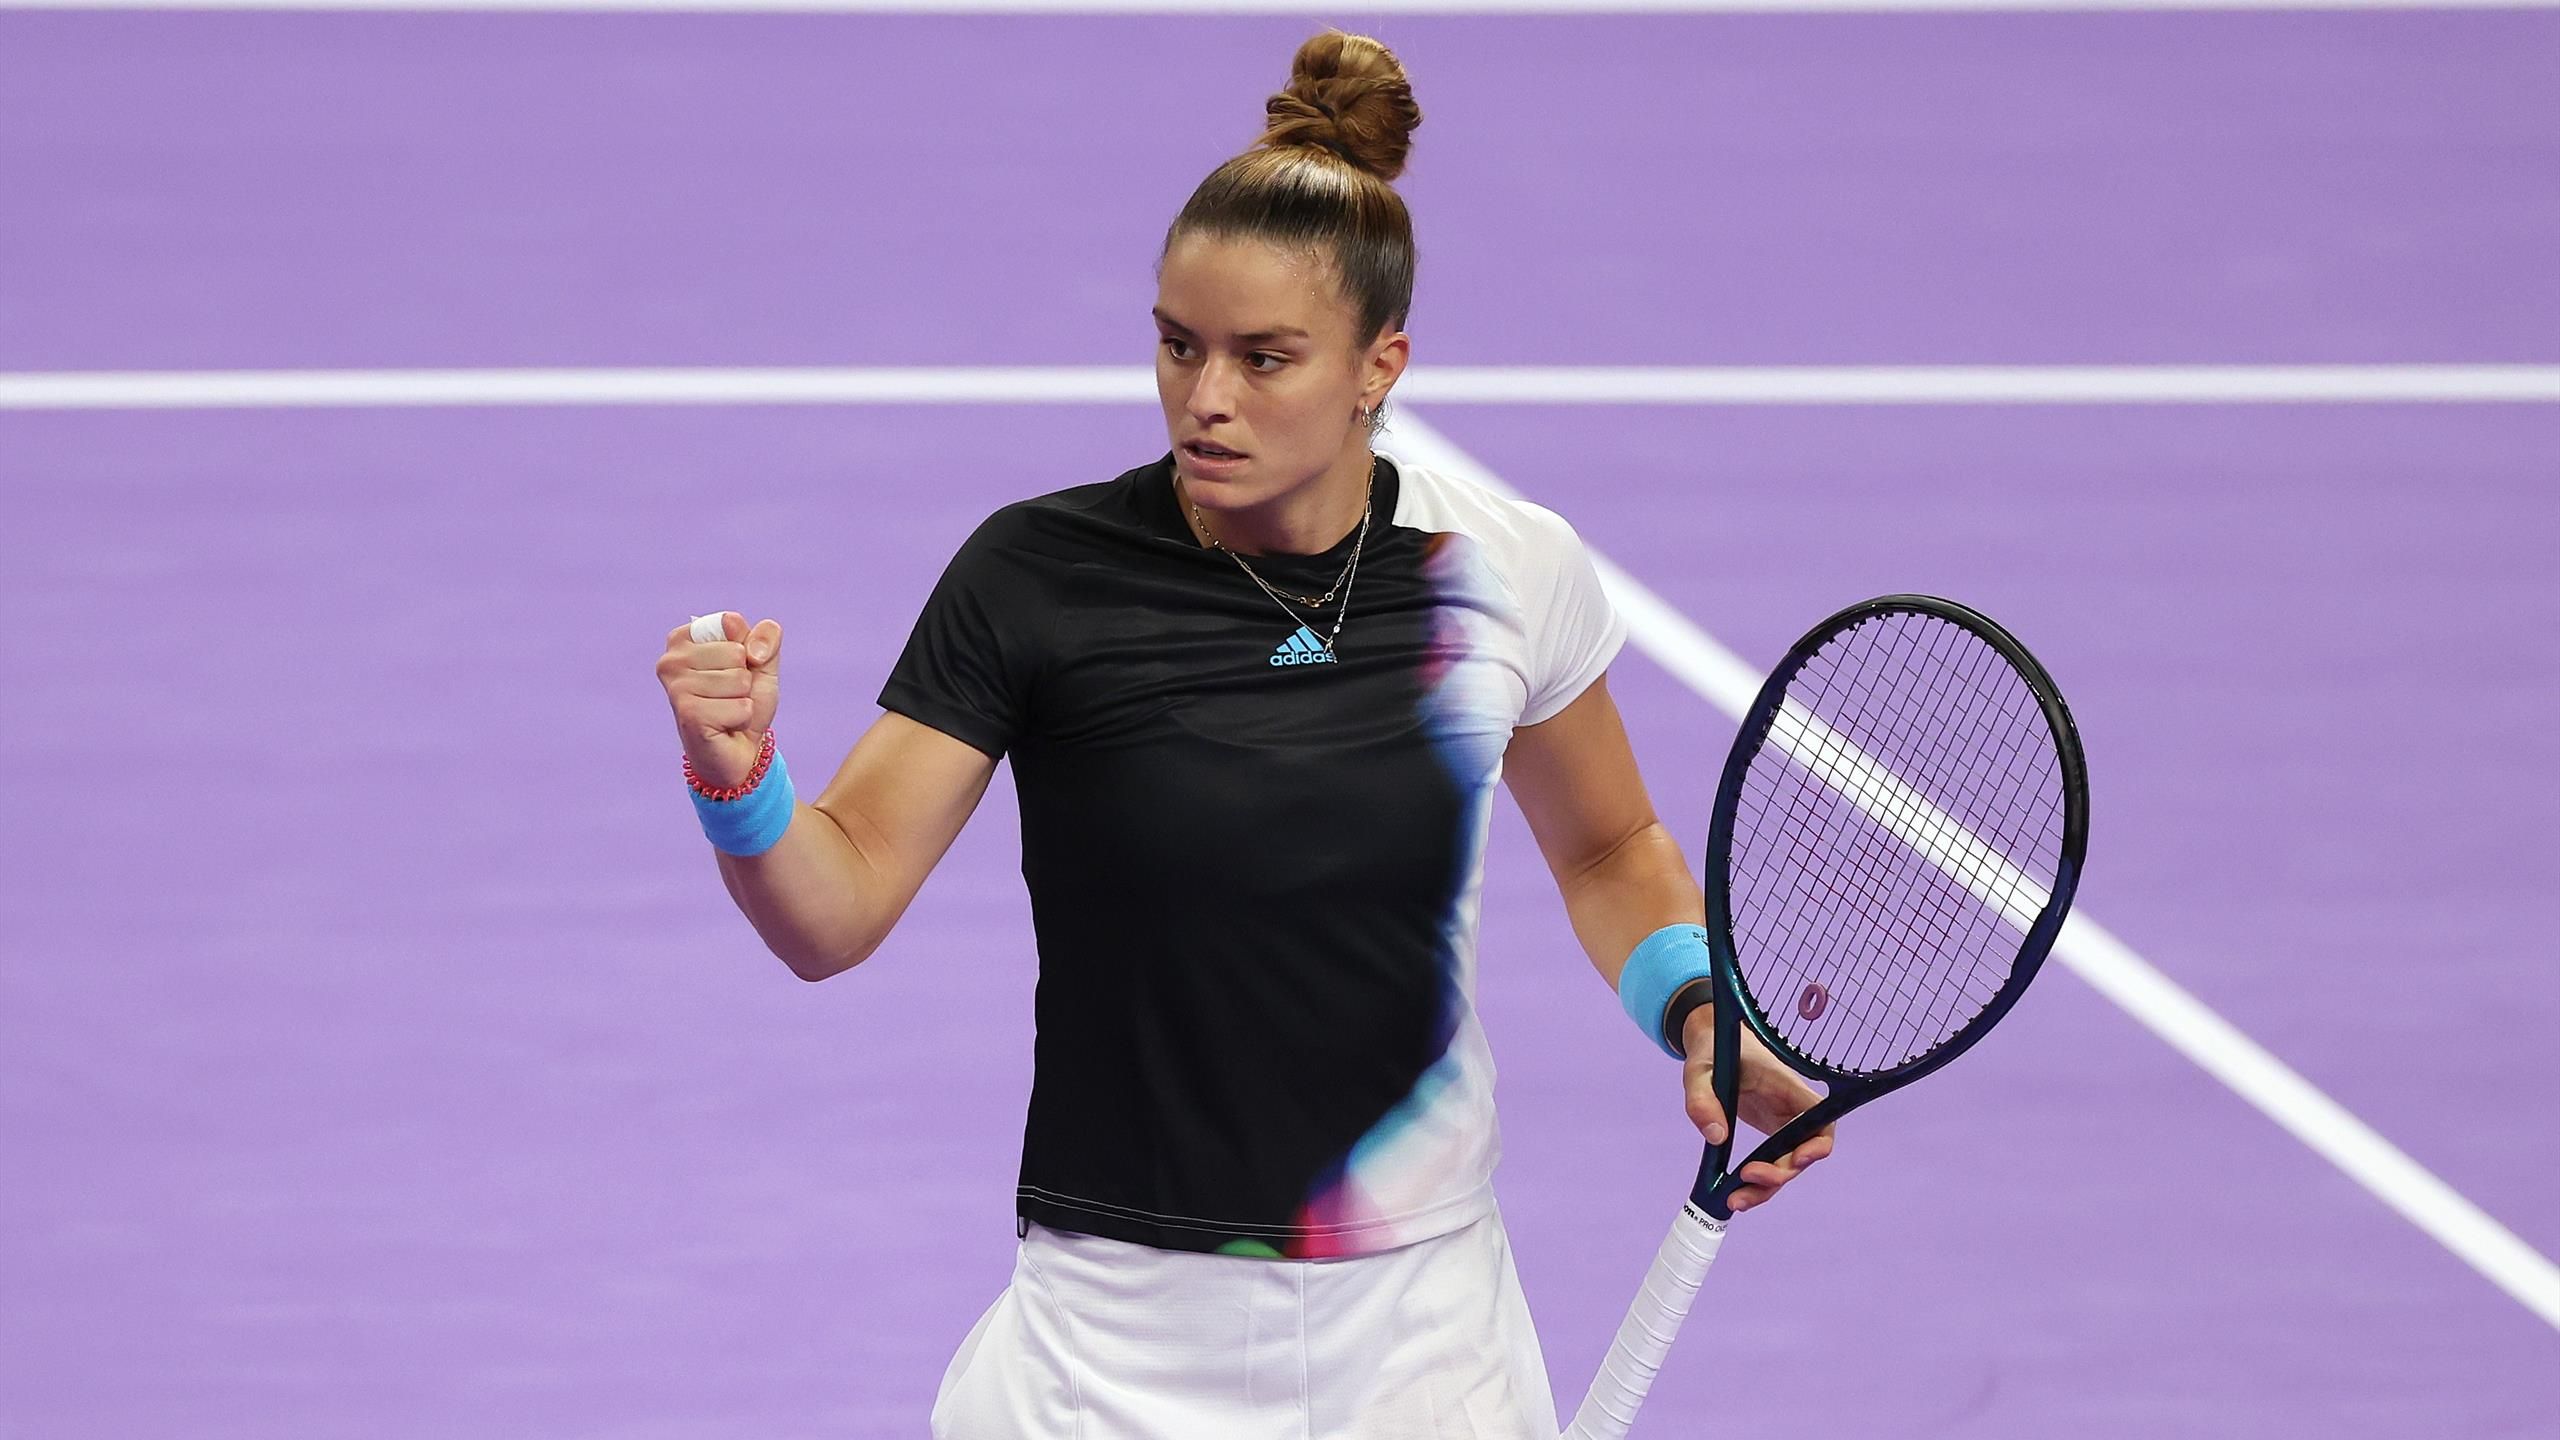 WTA Finals 2022 Maria Sakkari schon im Halbfinale - Dreikampf um zweiten Platz in Gruppe Nancy Richey